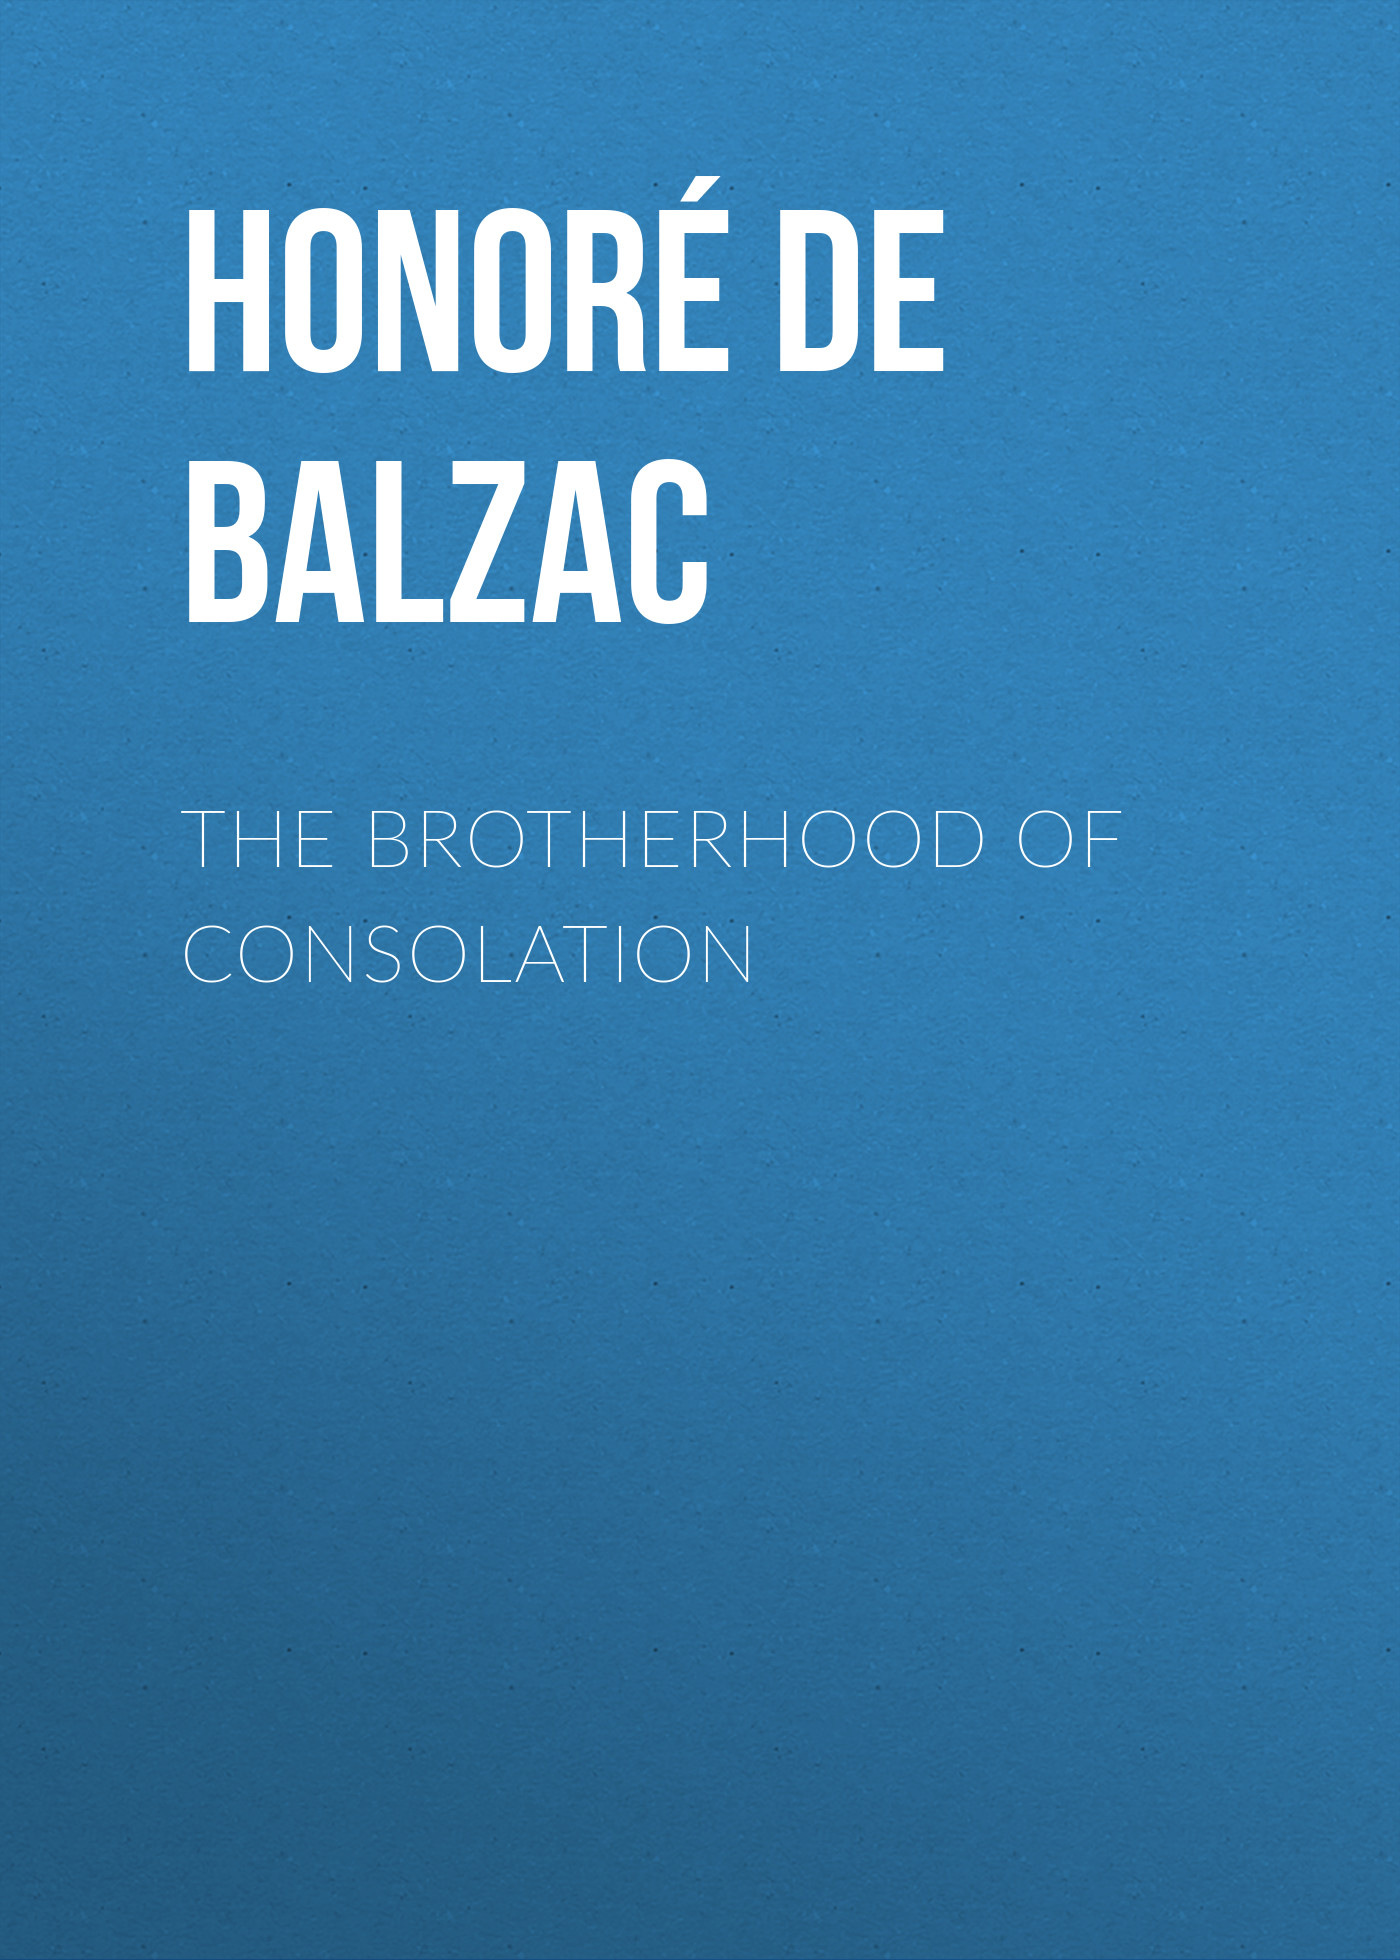 Книга The Brotherhood of Consolation из серии , созданная Honoré Balzac, может относится к жанру Литература 19 века, Зарубежная старинная литература, Зарубежная классика. Стоимость электронной книги The Brotherhood of Consolation с идентификатором 25021227 составляет 0 руб.